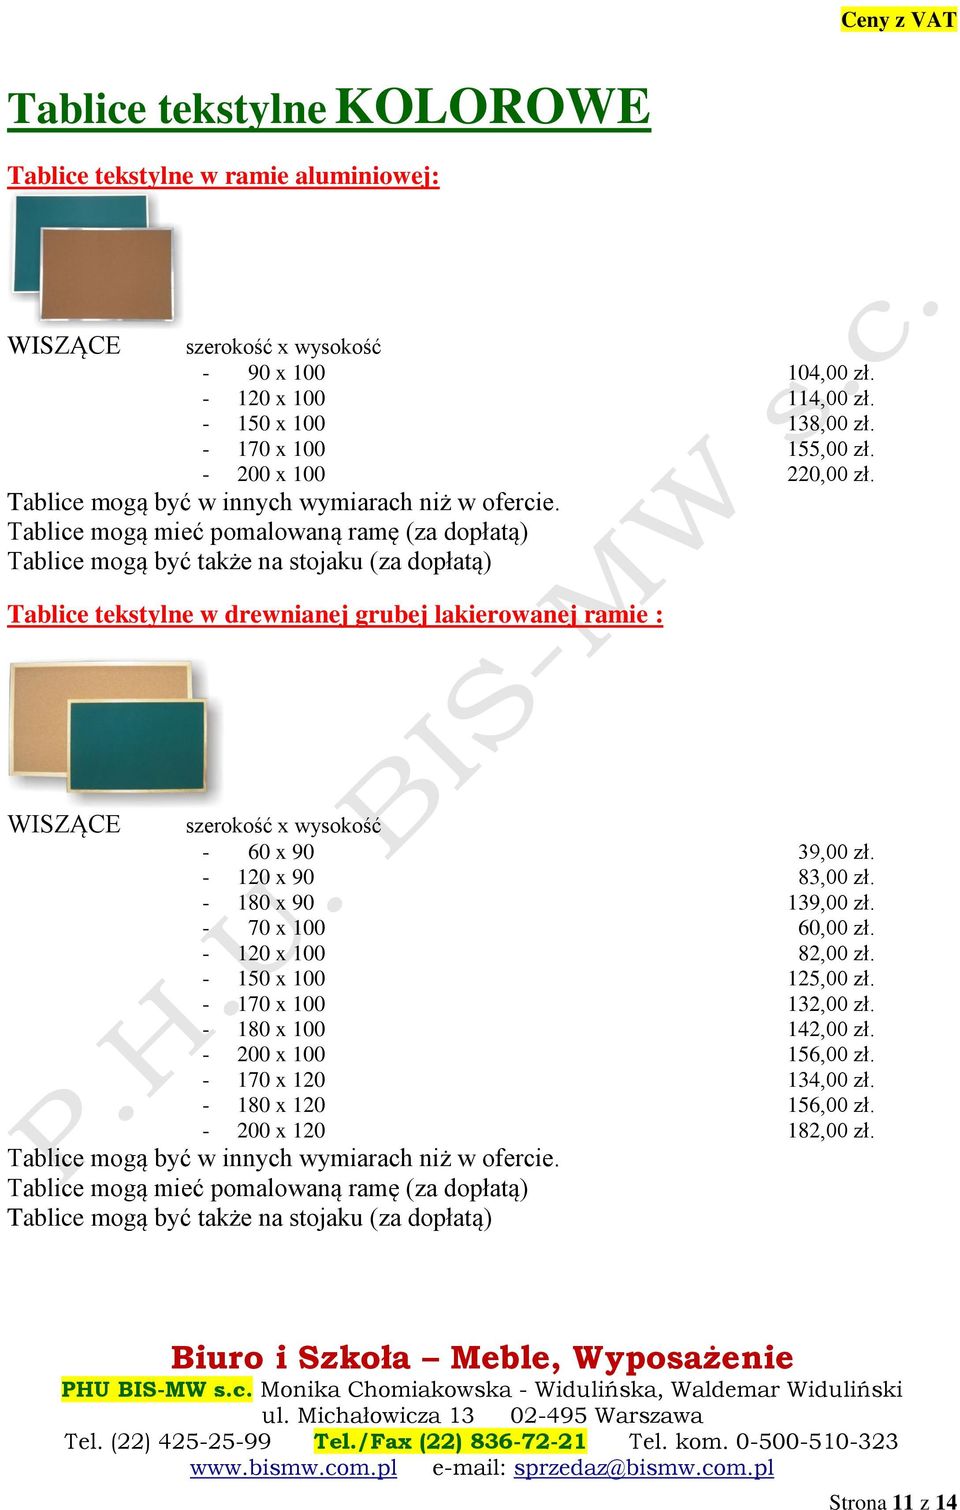 Tablice mogą mieć pomalowaną ramę (za dopłatą) Tablice mogą być także na stojaku (za dopłatą) Tablice tekstylne w drewnianej grubej lakierowanej ramie : WISZĄCE szerokość x wysokość - 60 x 90 39,00